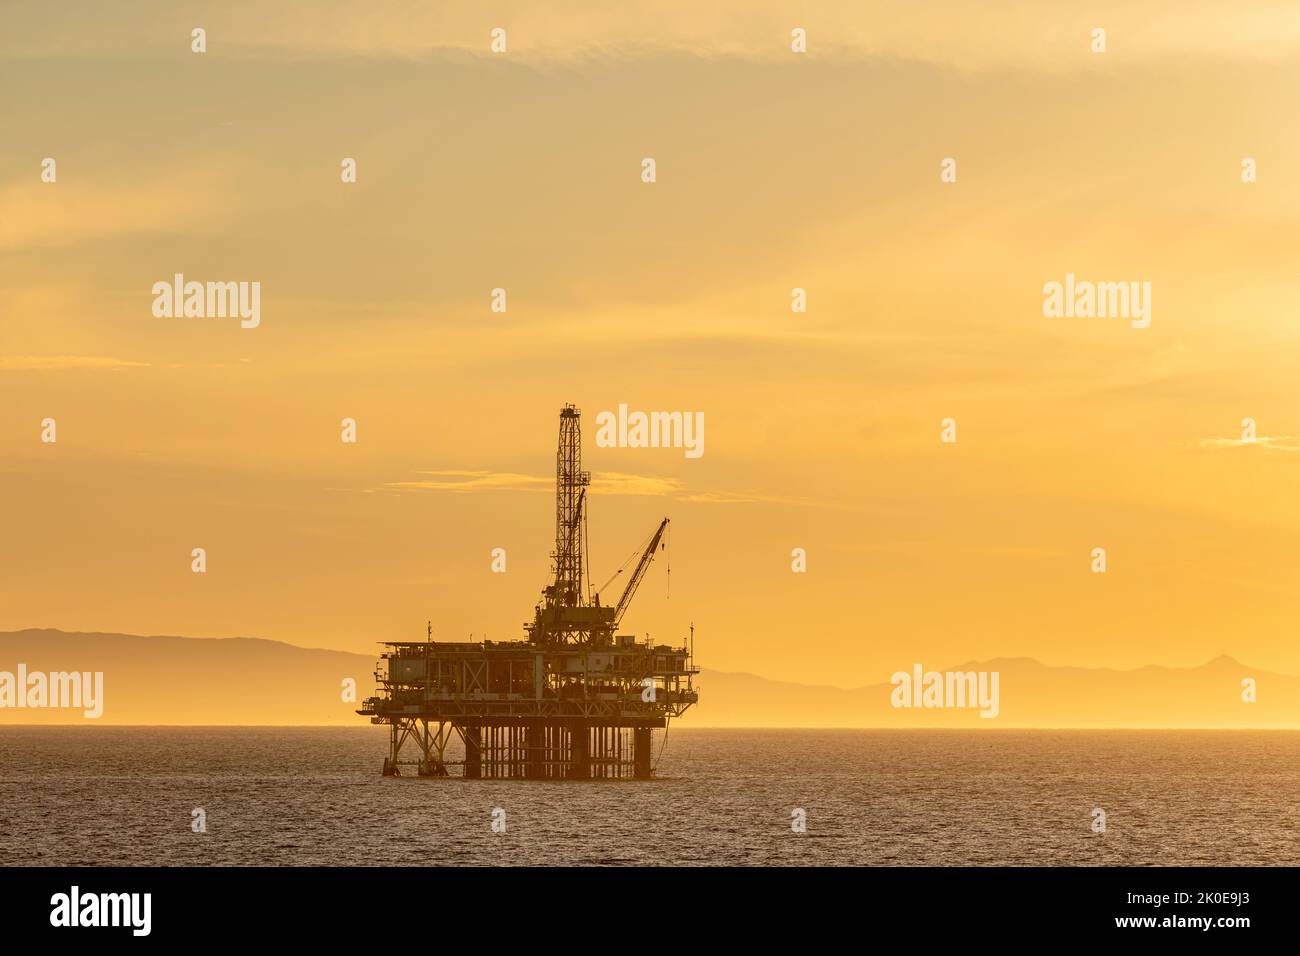 Image dramatique d'une plate-forme pétrolière offshore au large de la côte de Californie contre un ciel d'hiver jaune pendant que le soleil se couche. Banque D'Images